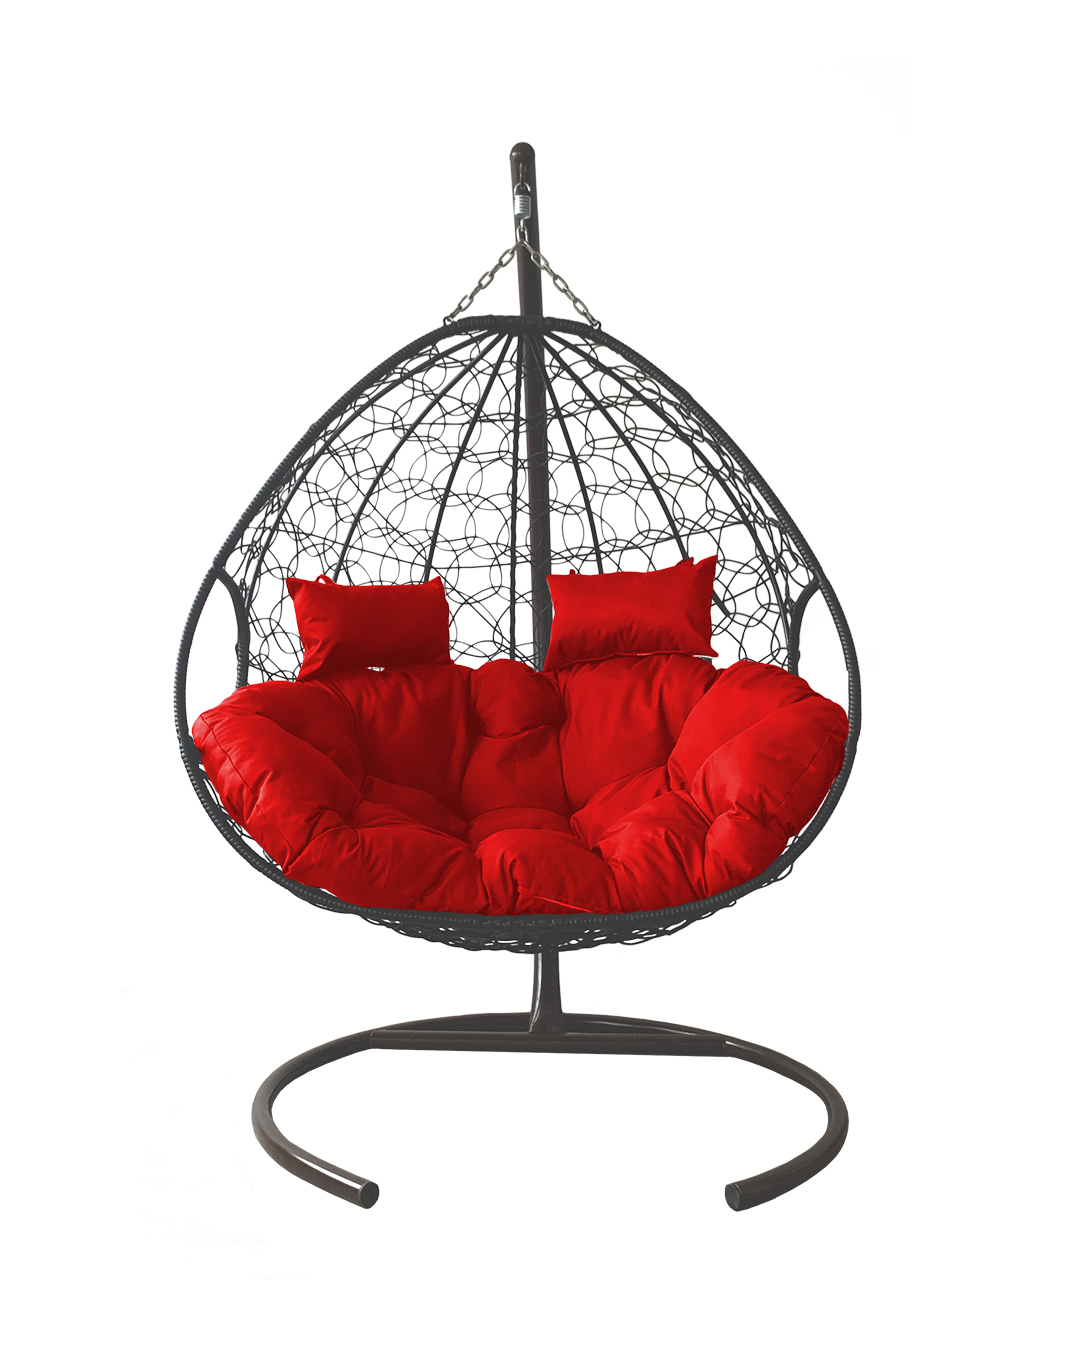 фото Подвесное кресло серое m-group для двоих ротанг 11450306 красная подушка